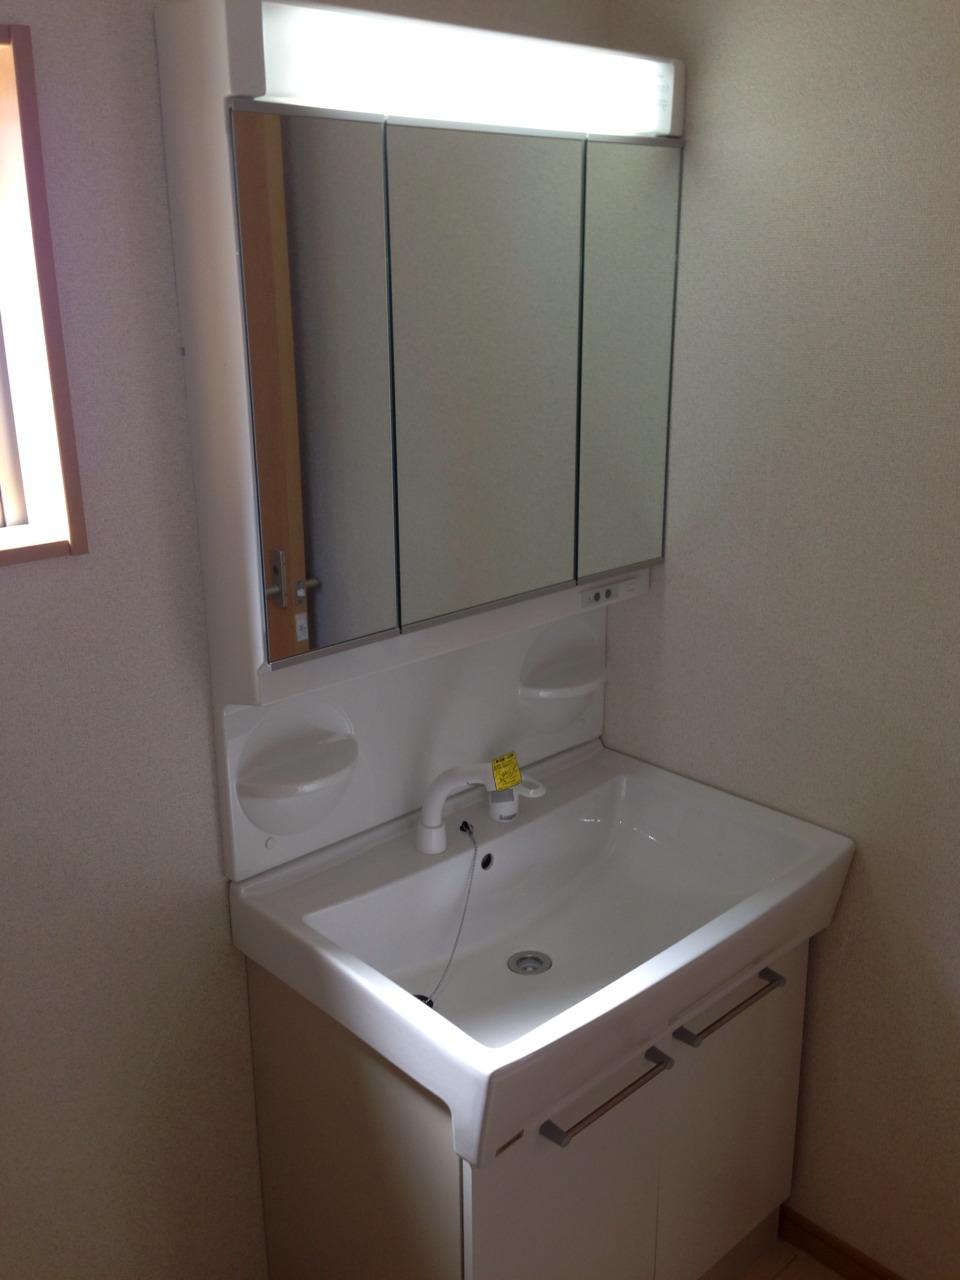 Wash basin, toilet. Three-sided mirror Shampoo dresser